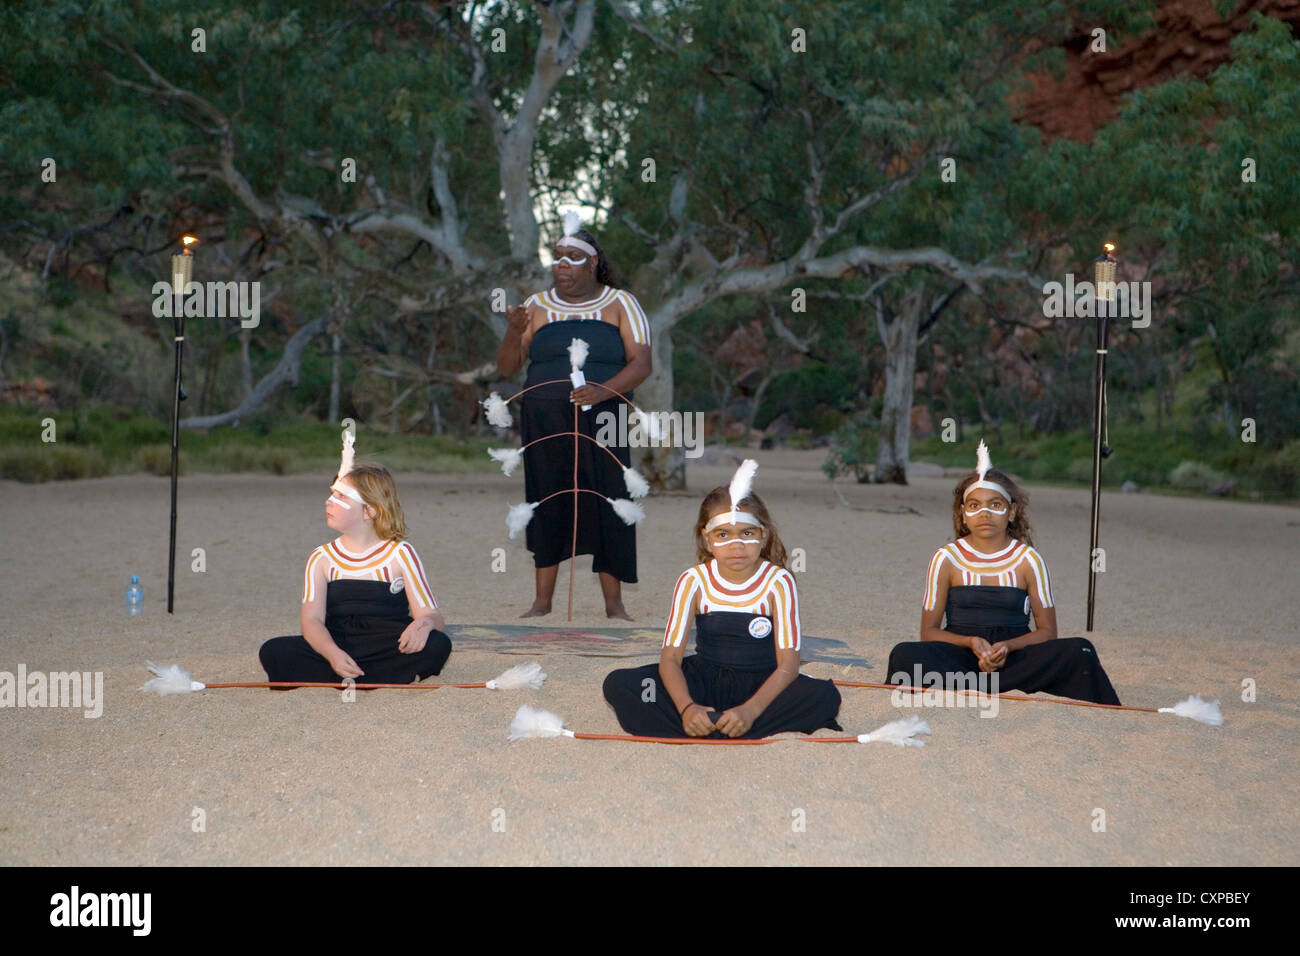 Les danseuses à Simpson's Gap dans l'ouest de McDonnell Alice Springs, Australie Banque D'Images